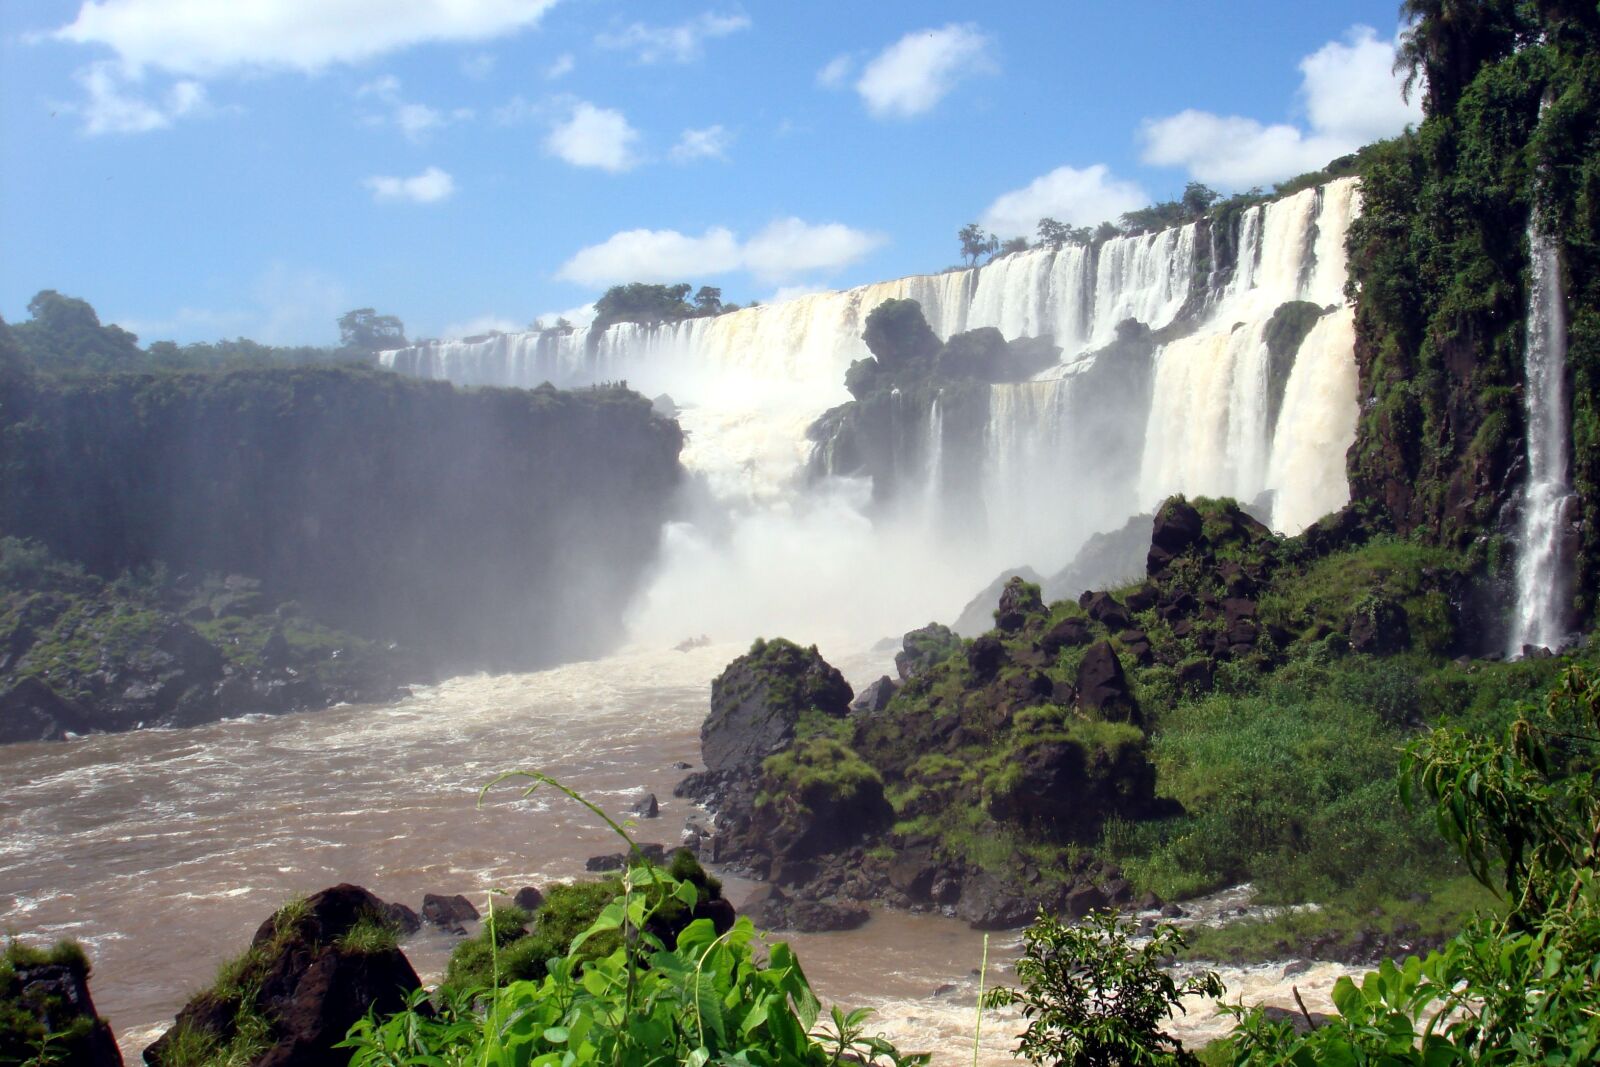 Sony DSC-W100 sample photo. Iguassu, brazil, waterfall photography